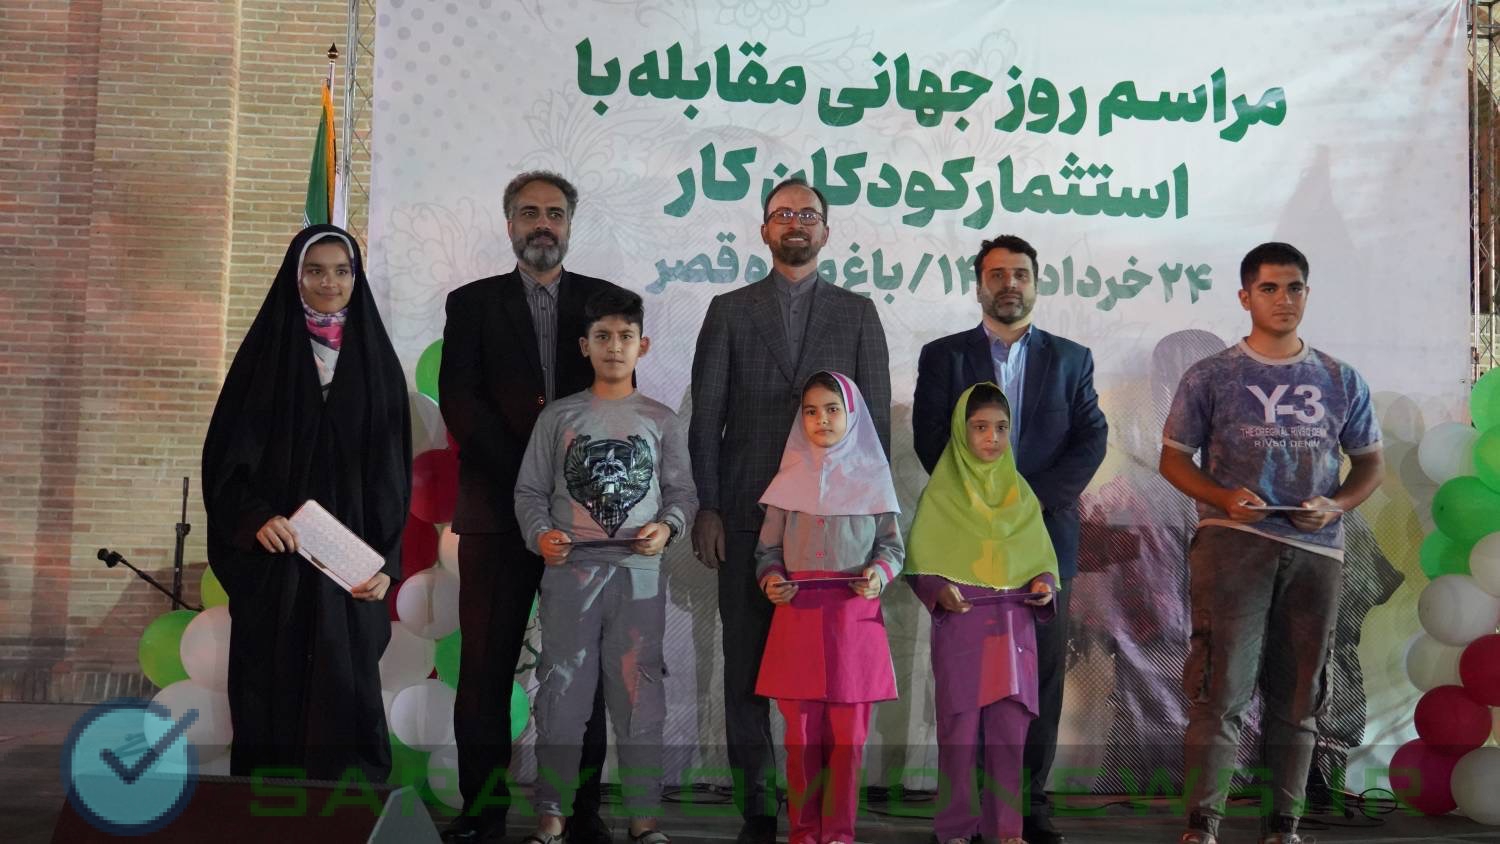 احمدی صدر: آغاز طرح استعدادیابی، توانمندسازی و حرفه آموزی کودکان کار در مدارس پویا شهر/شهرداری تهران حاضر است ظرف مدت ۳سال مسئله کودکان کار را برطرف کند